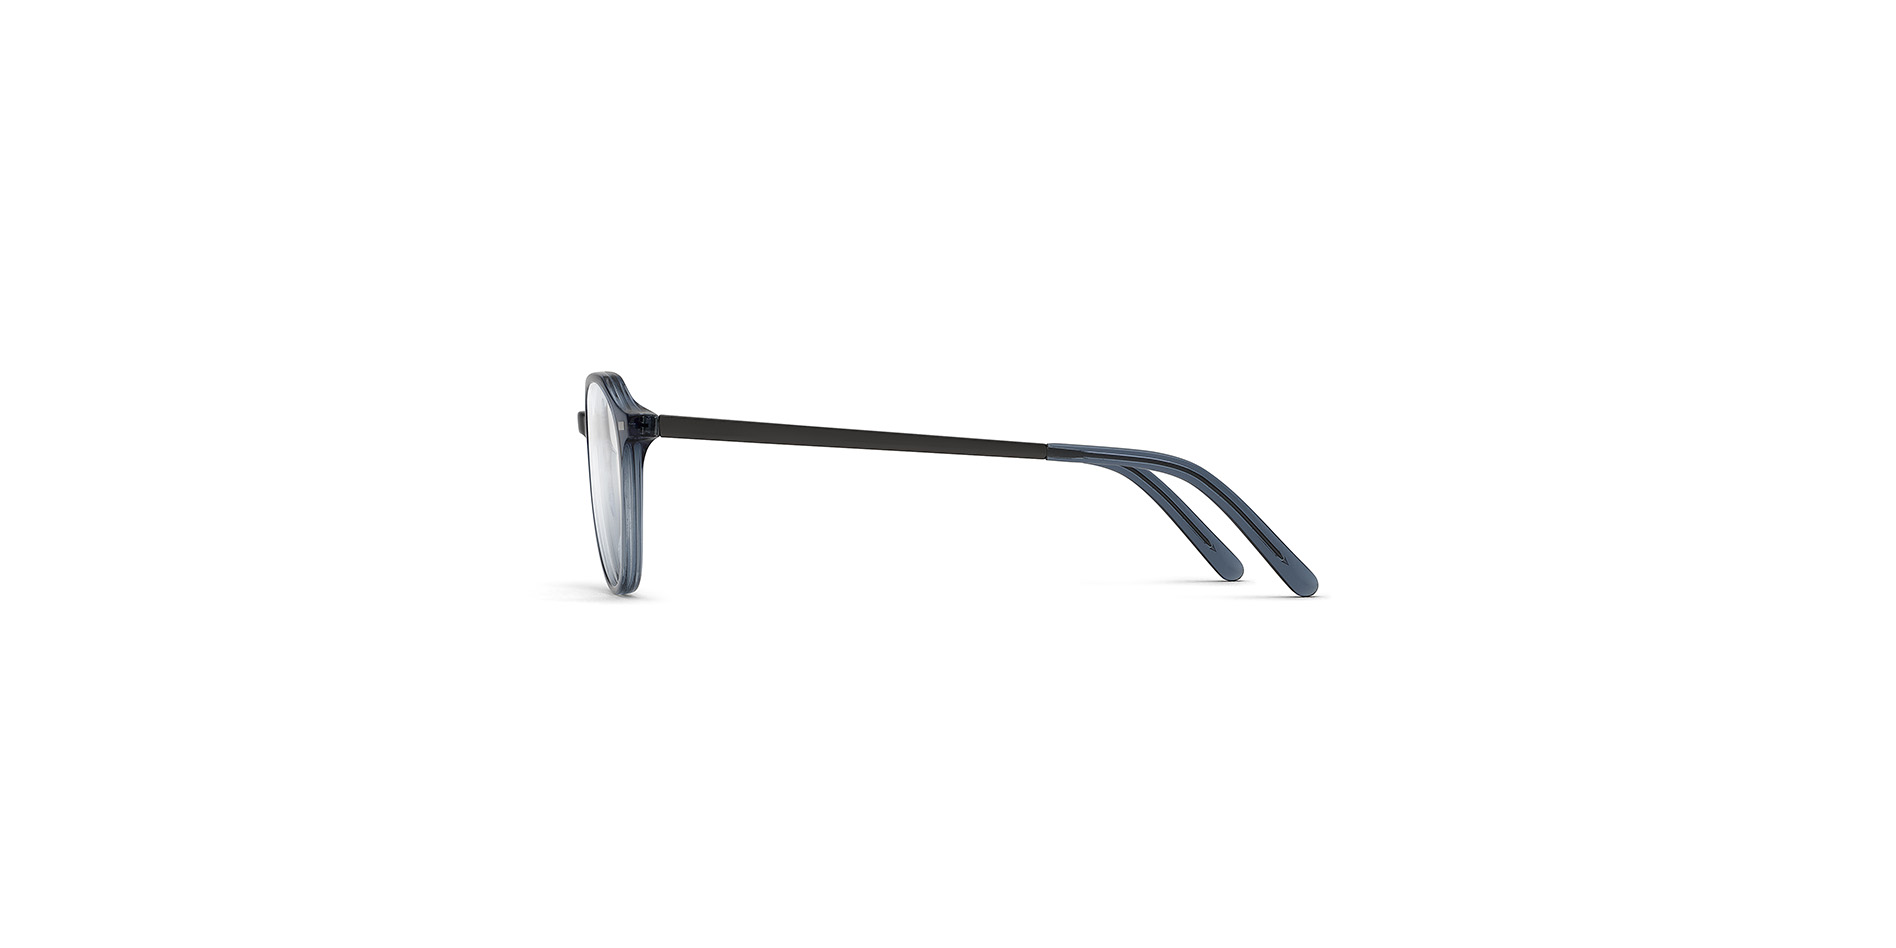 Klassische Herren-Korrektionsbrille aus Kunststoff in Pantoform, der Bügel ist mit einem Flexscharnier ausgestattet,  BC 012 FLEX CL